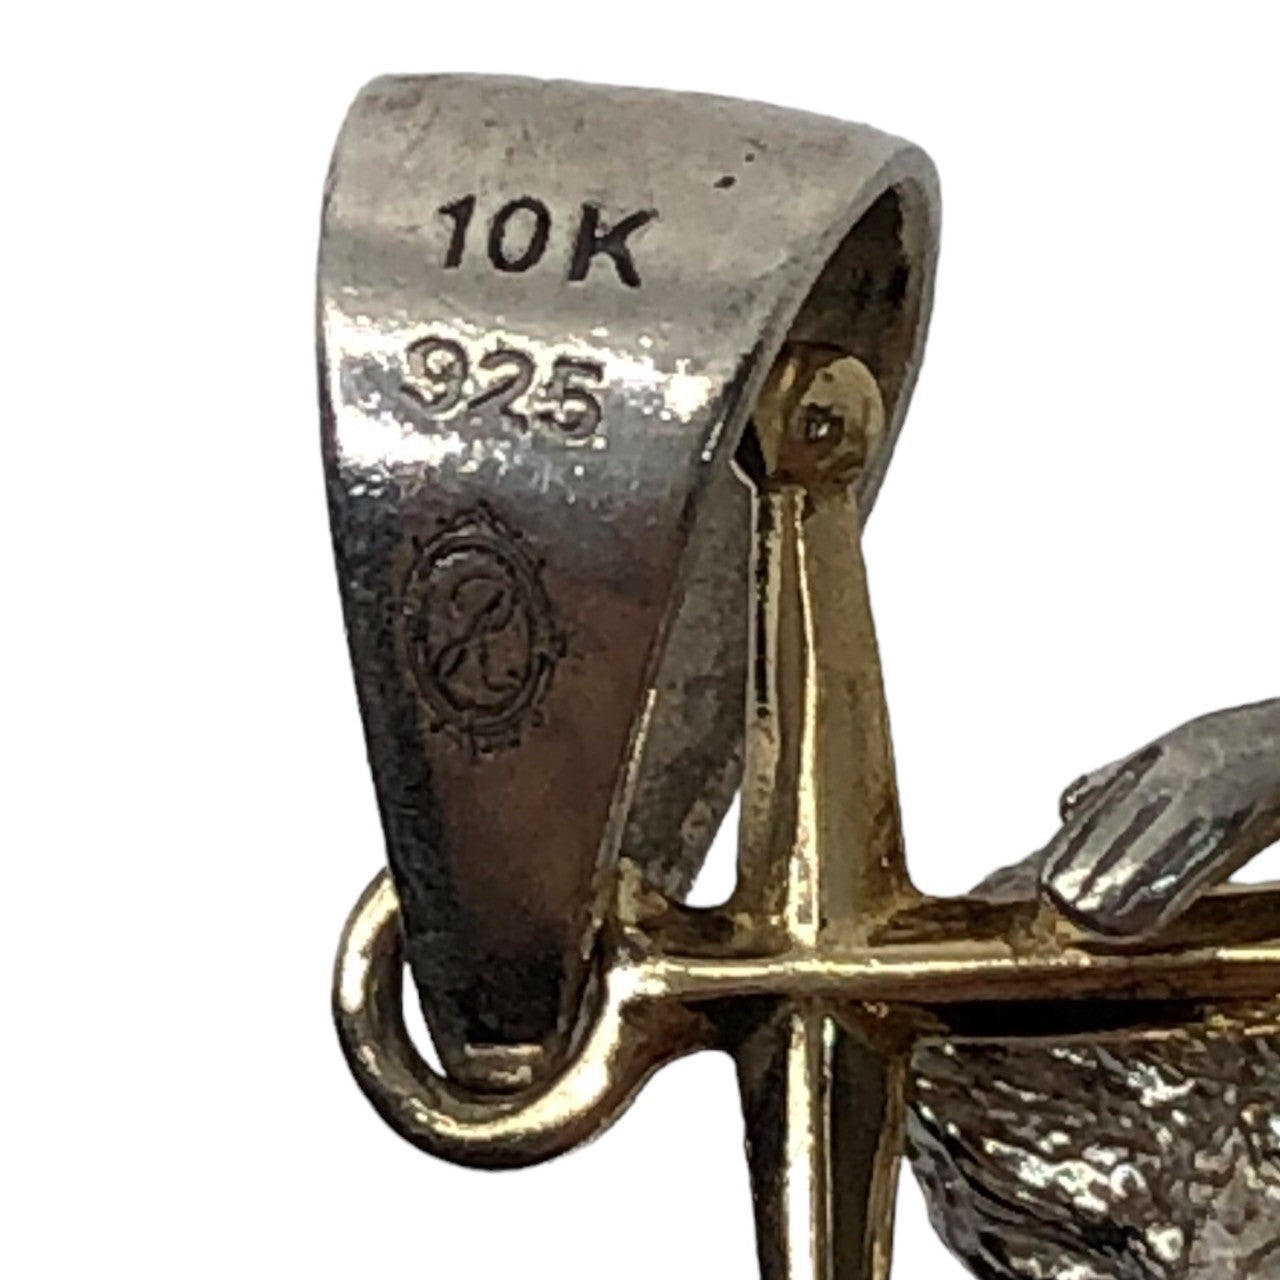 AVALANCHE(アヴァランチ) combination jewelry pendant top コンビネーション ジュエリー ペンダントップ 3-13011-03 シルバー×ゴールド(10K) 参考定価24,800円(税込)